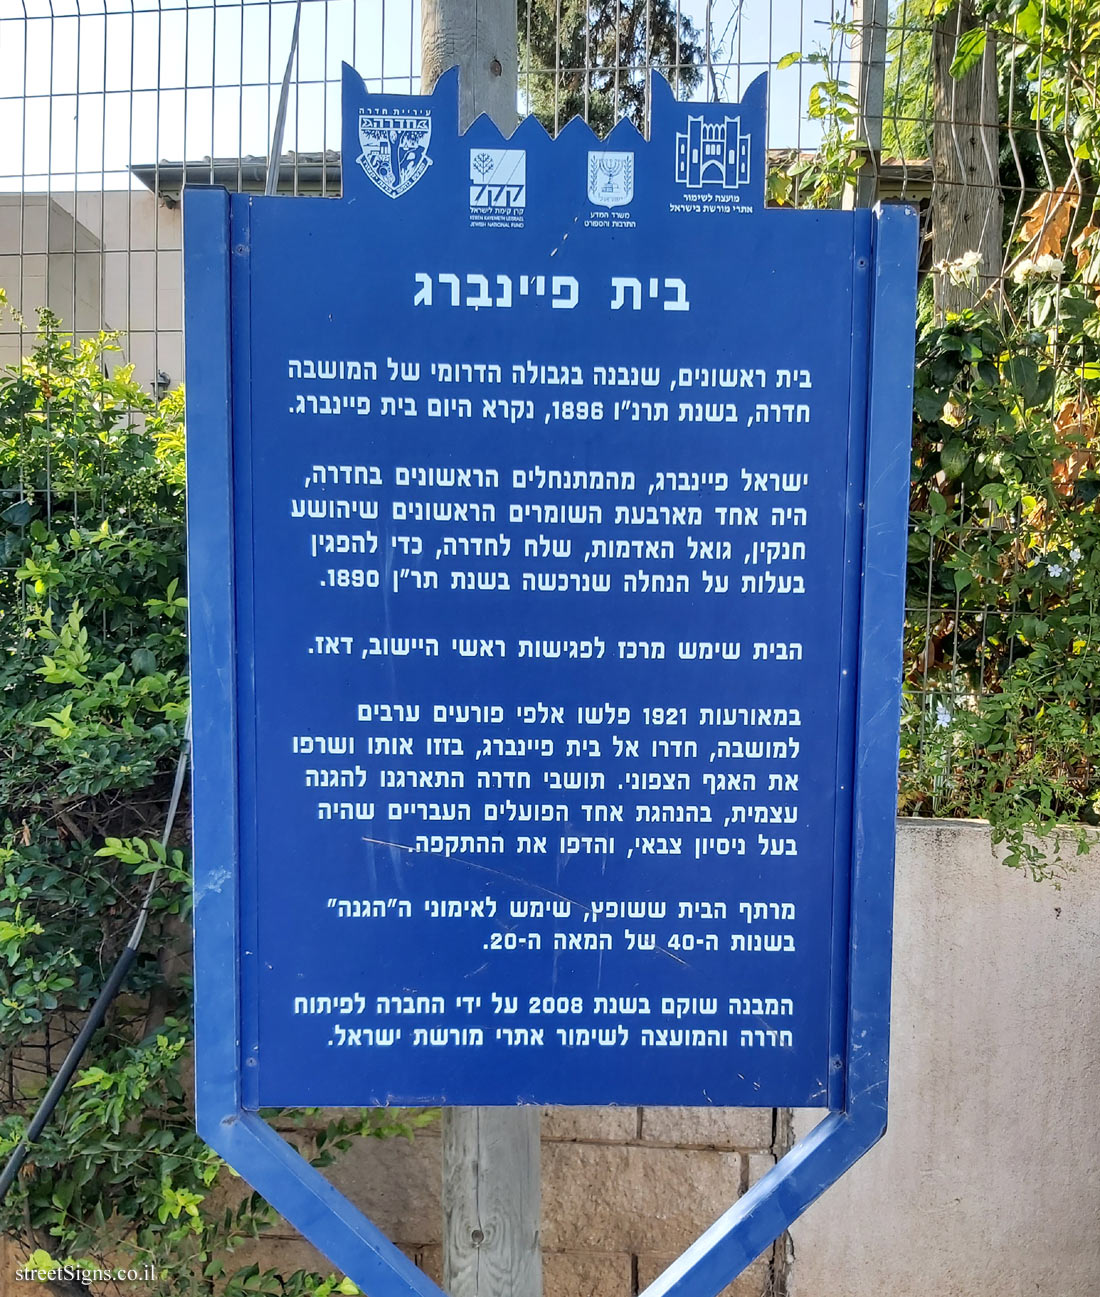 Hadera -  Heritage Sites in Israel - Feinberg House